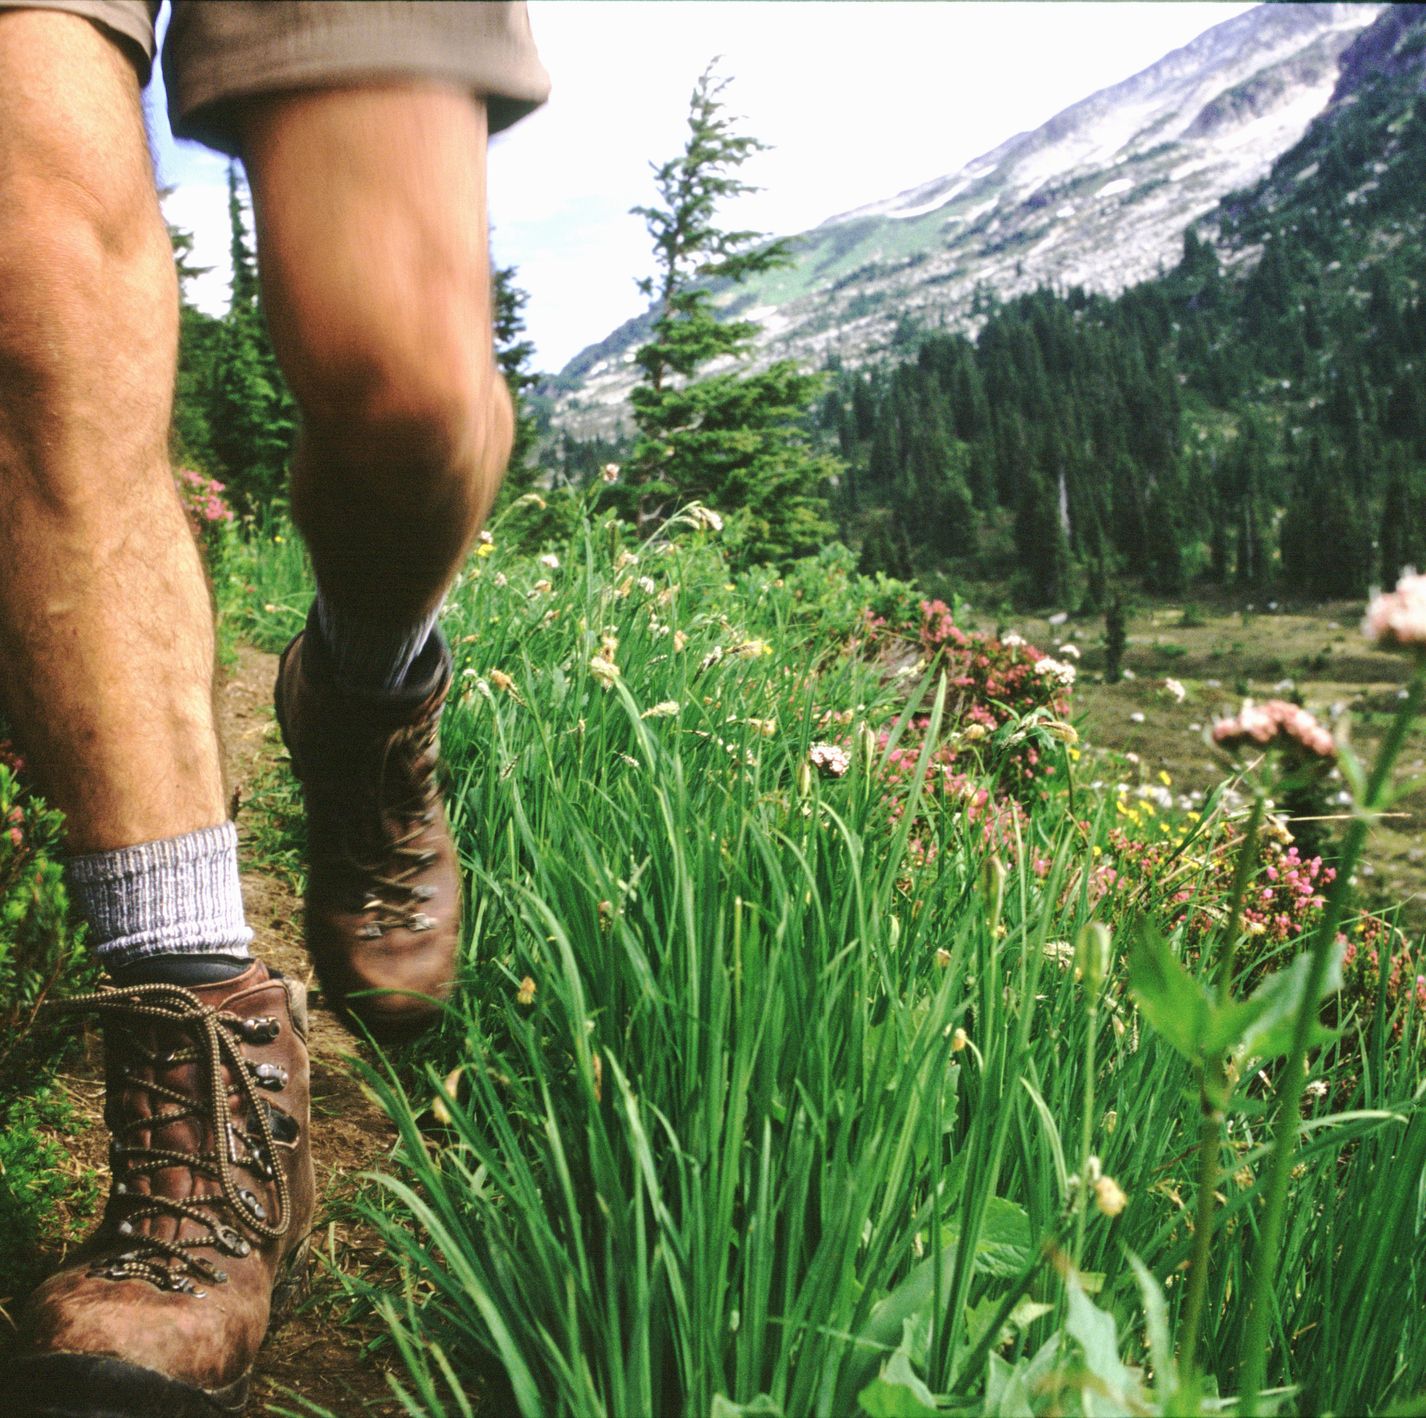 The Best Hiking Socks for Summer Treks